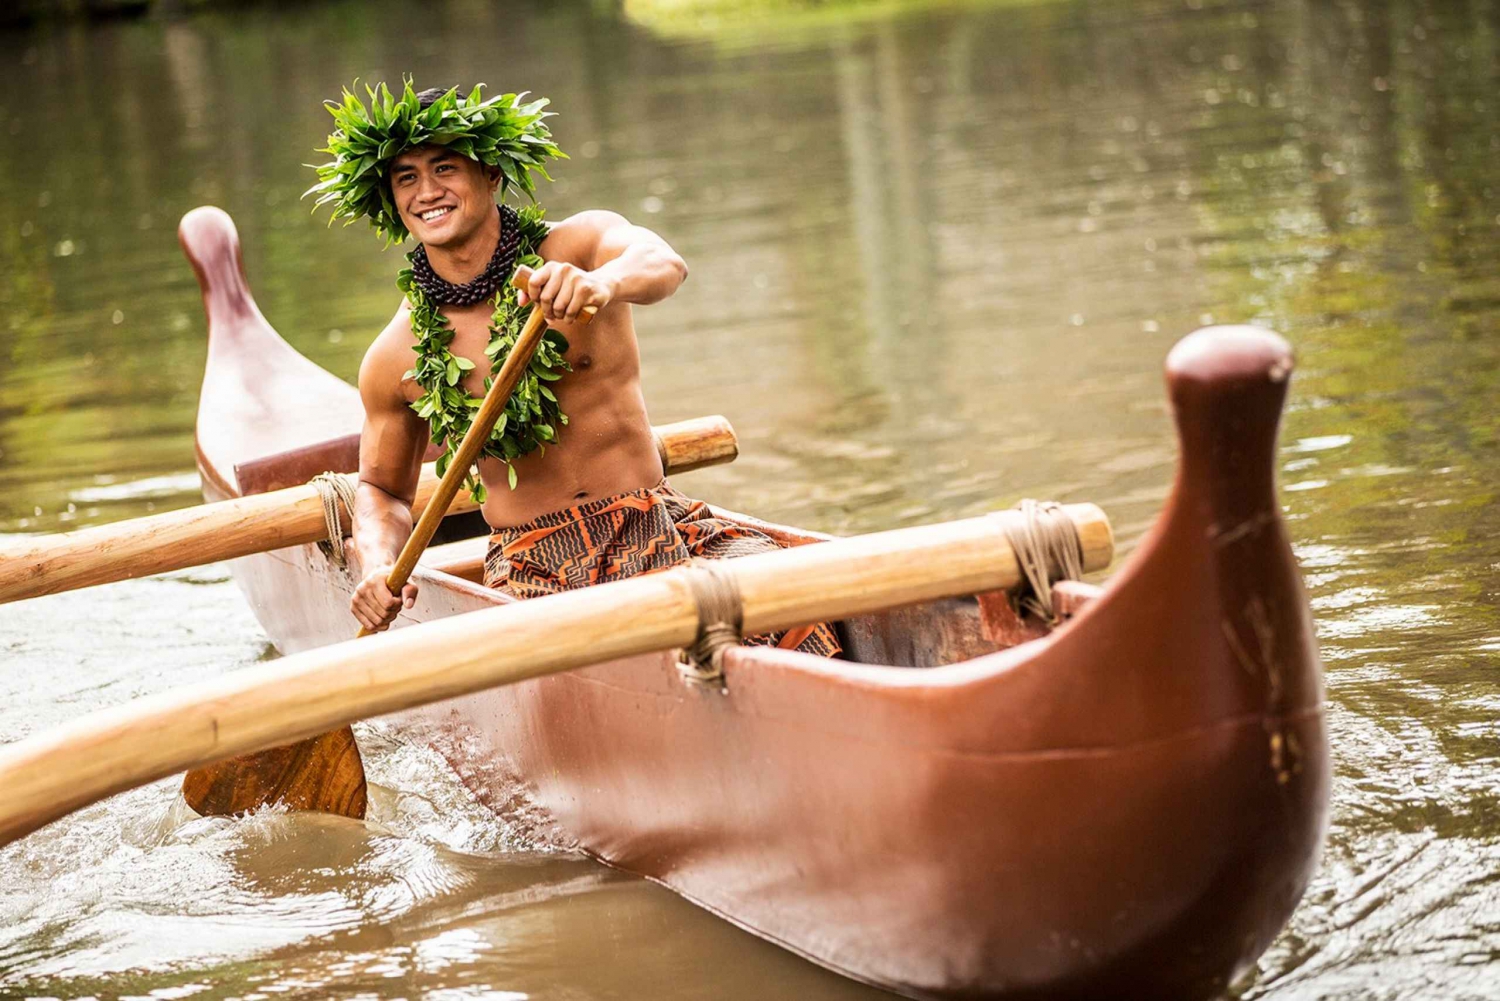 Oahu: Polynesian saaret kiertoajelu & elävä kulttuuriesitys